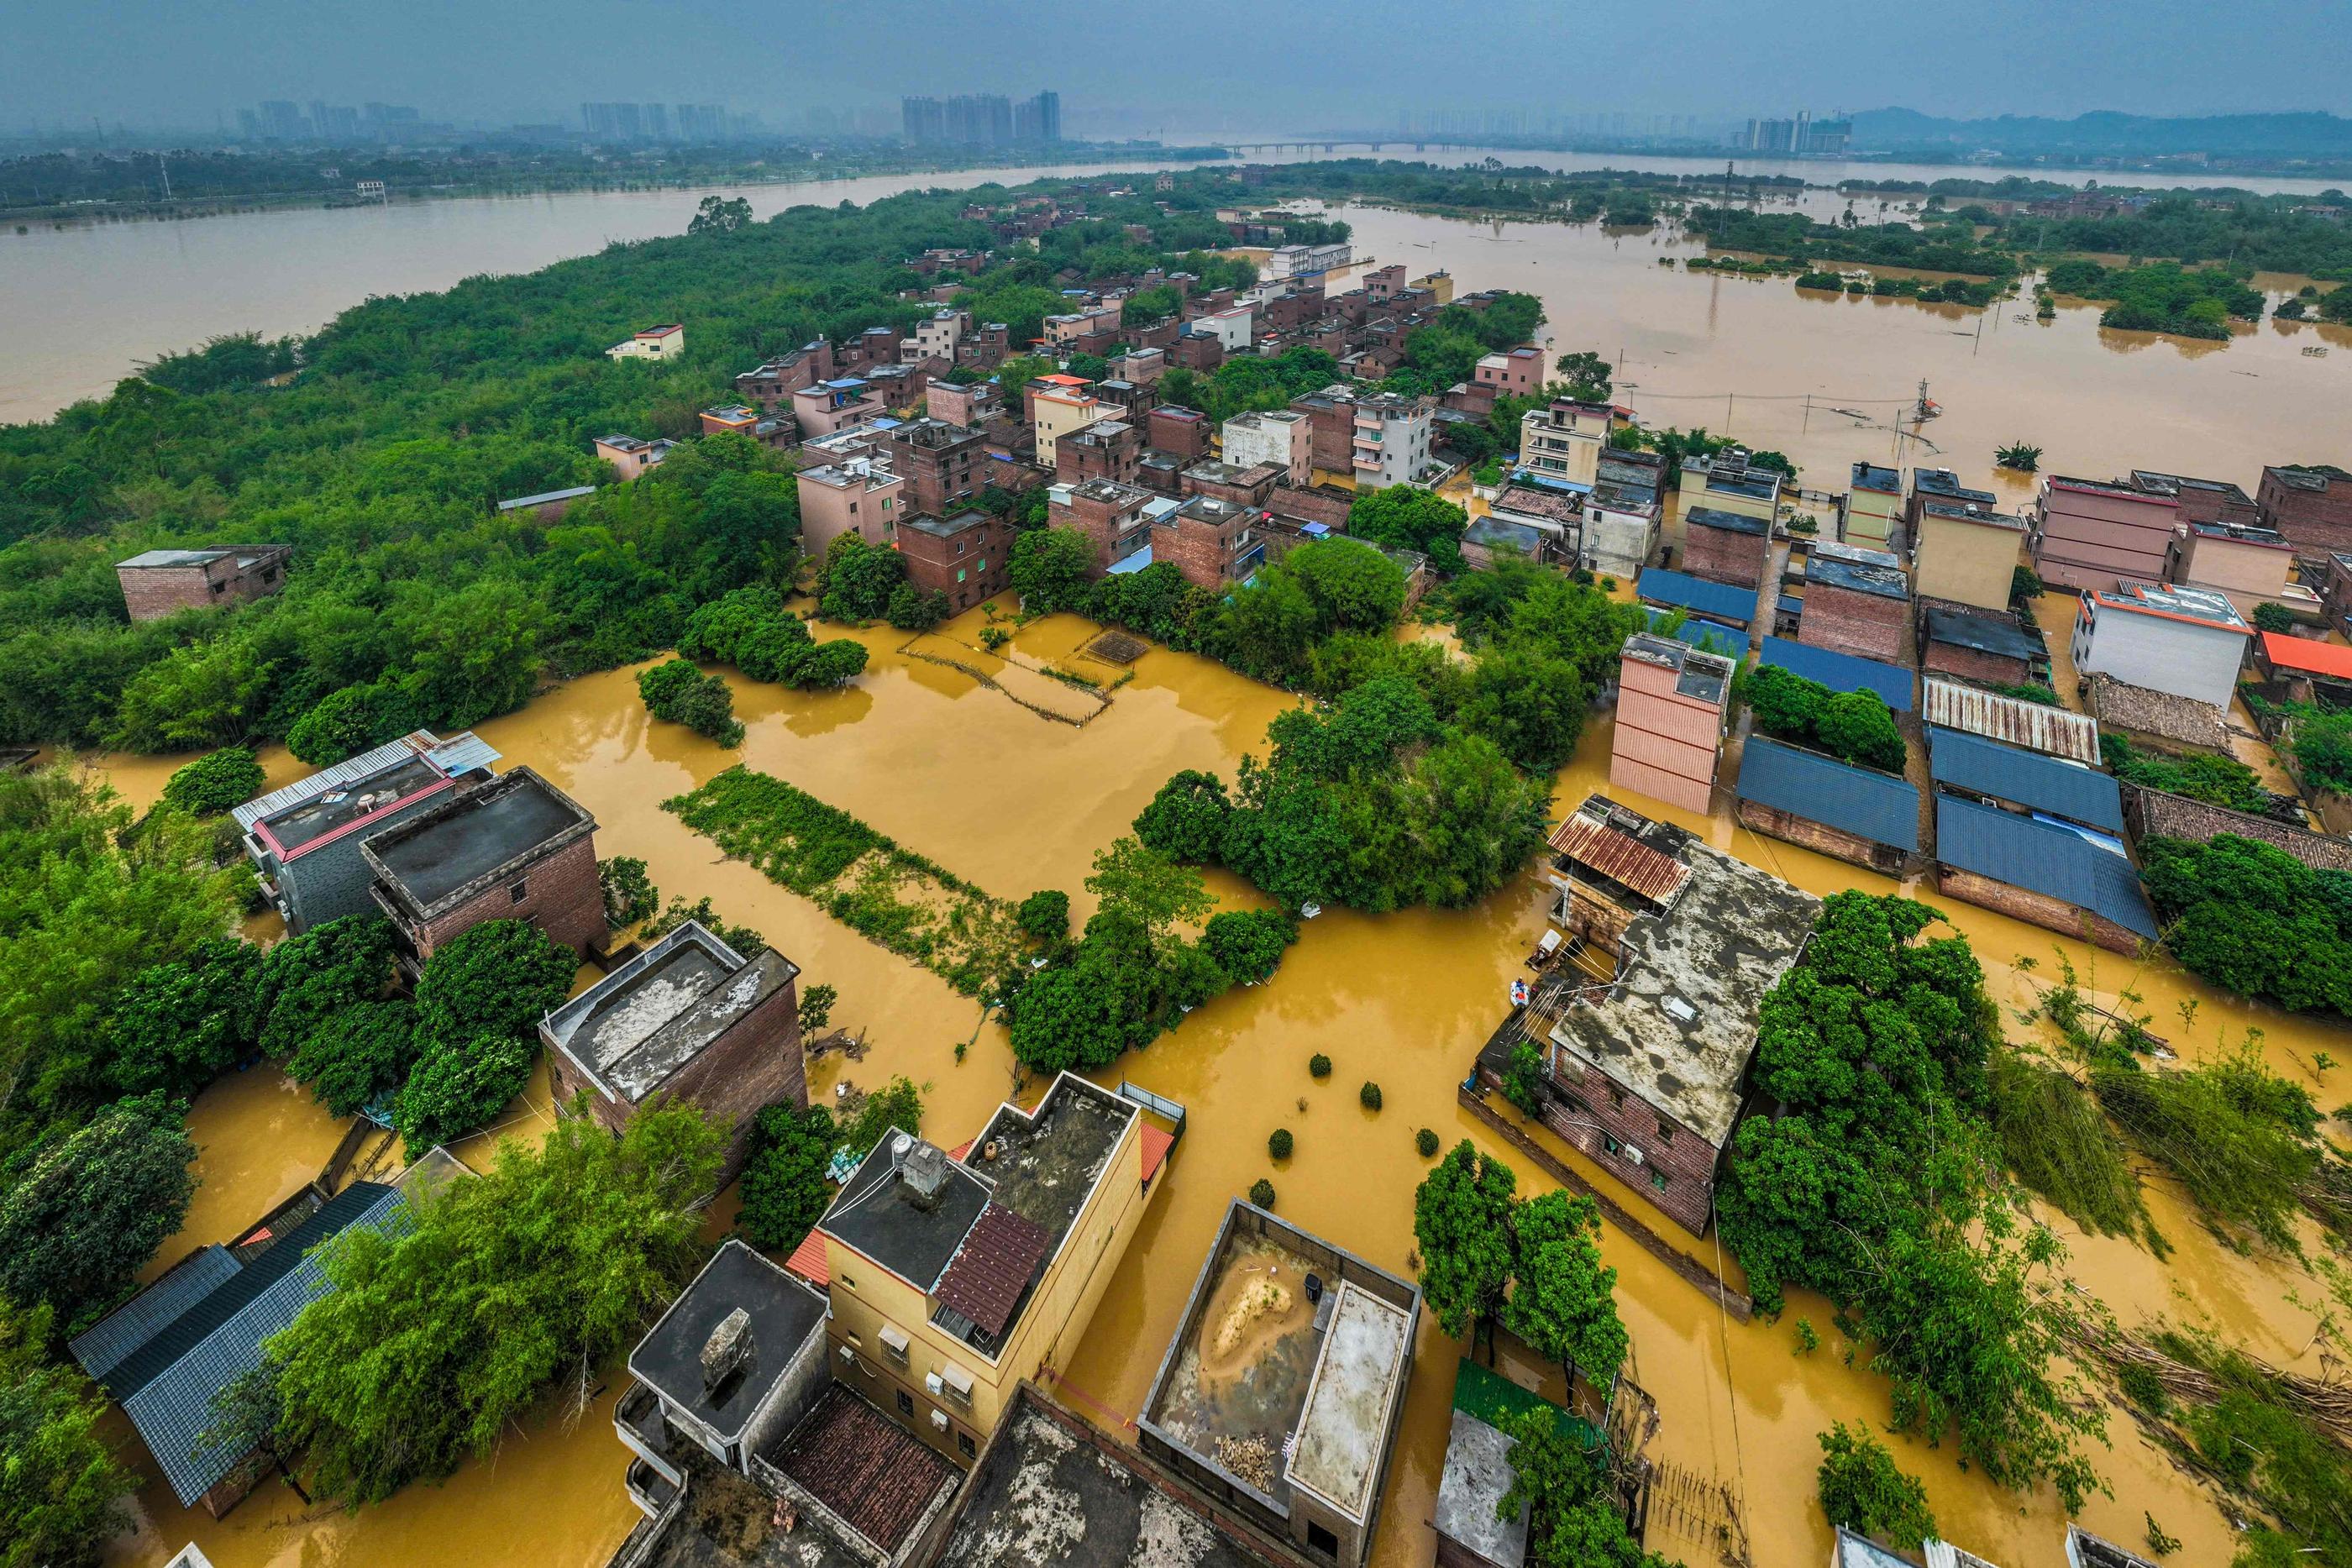 Qingyuan (Chine), lundi. Ce quartier est complètement inondé en raison des intempéries. AFP